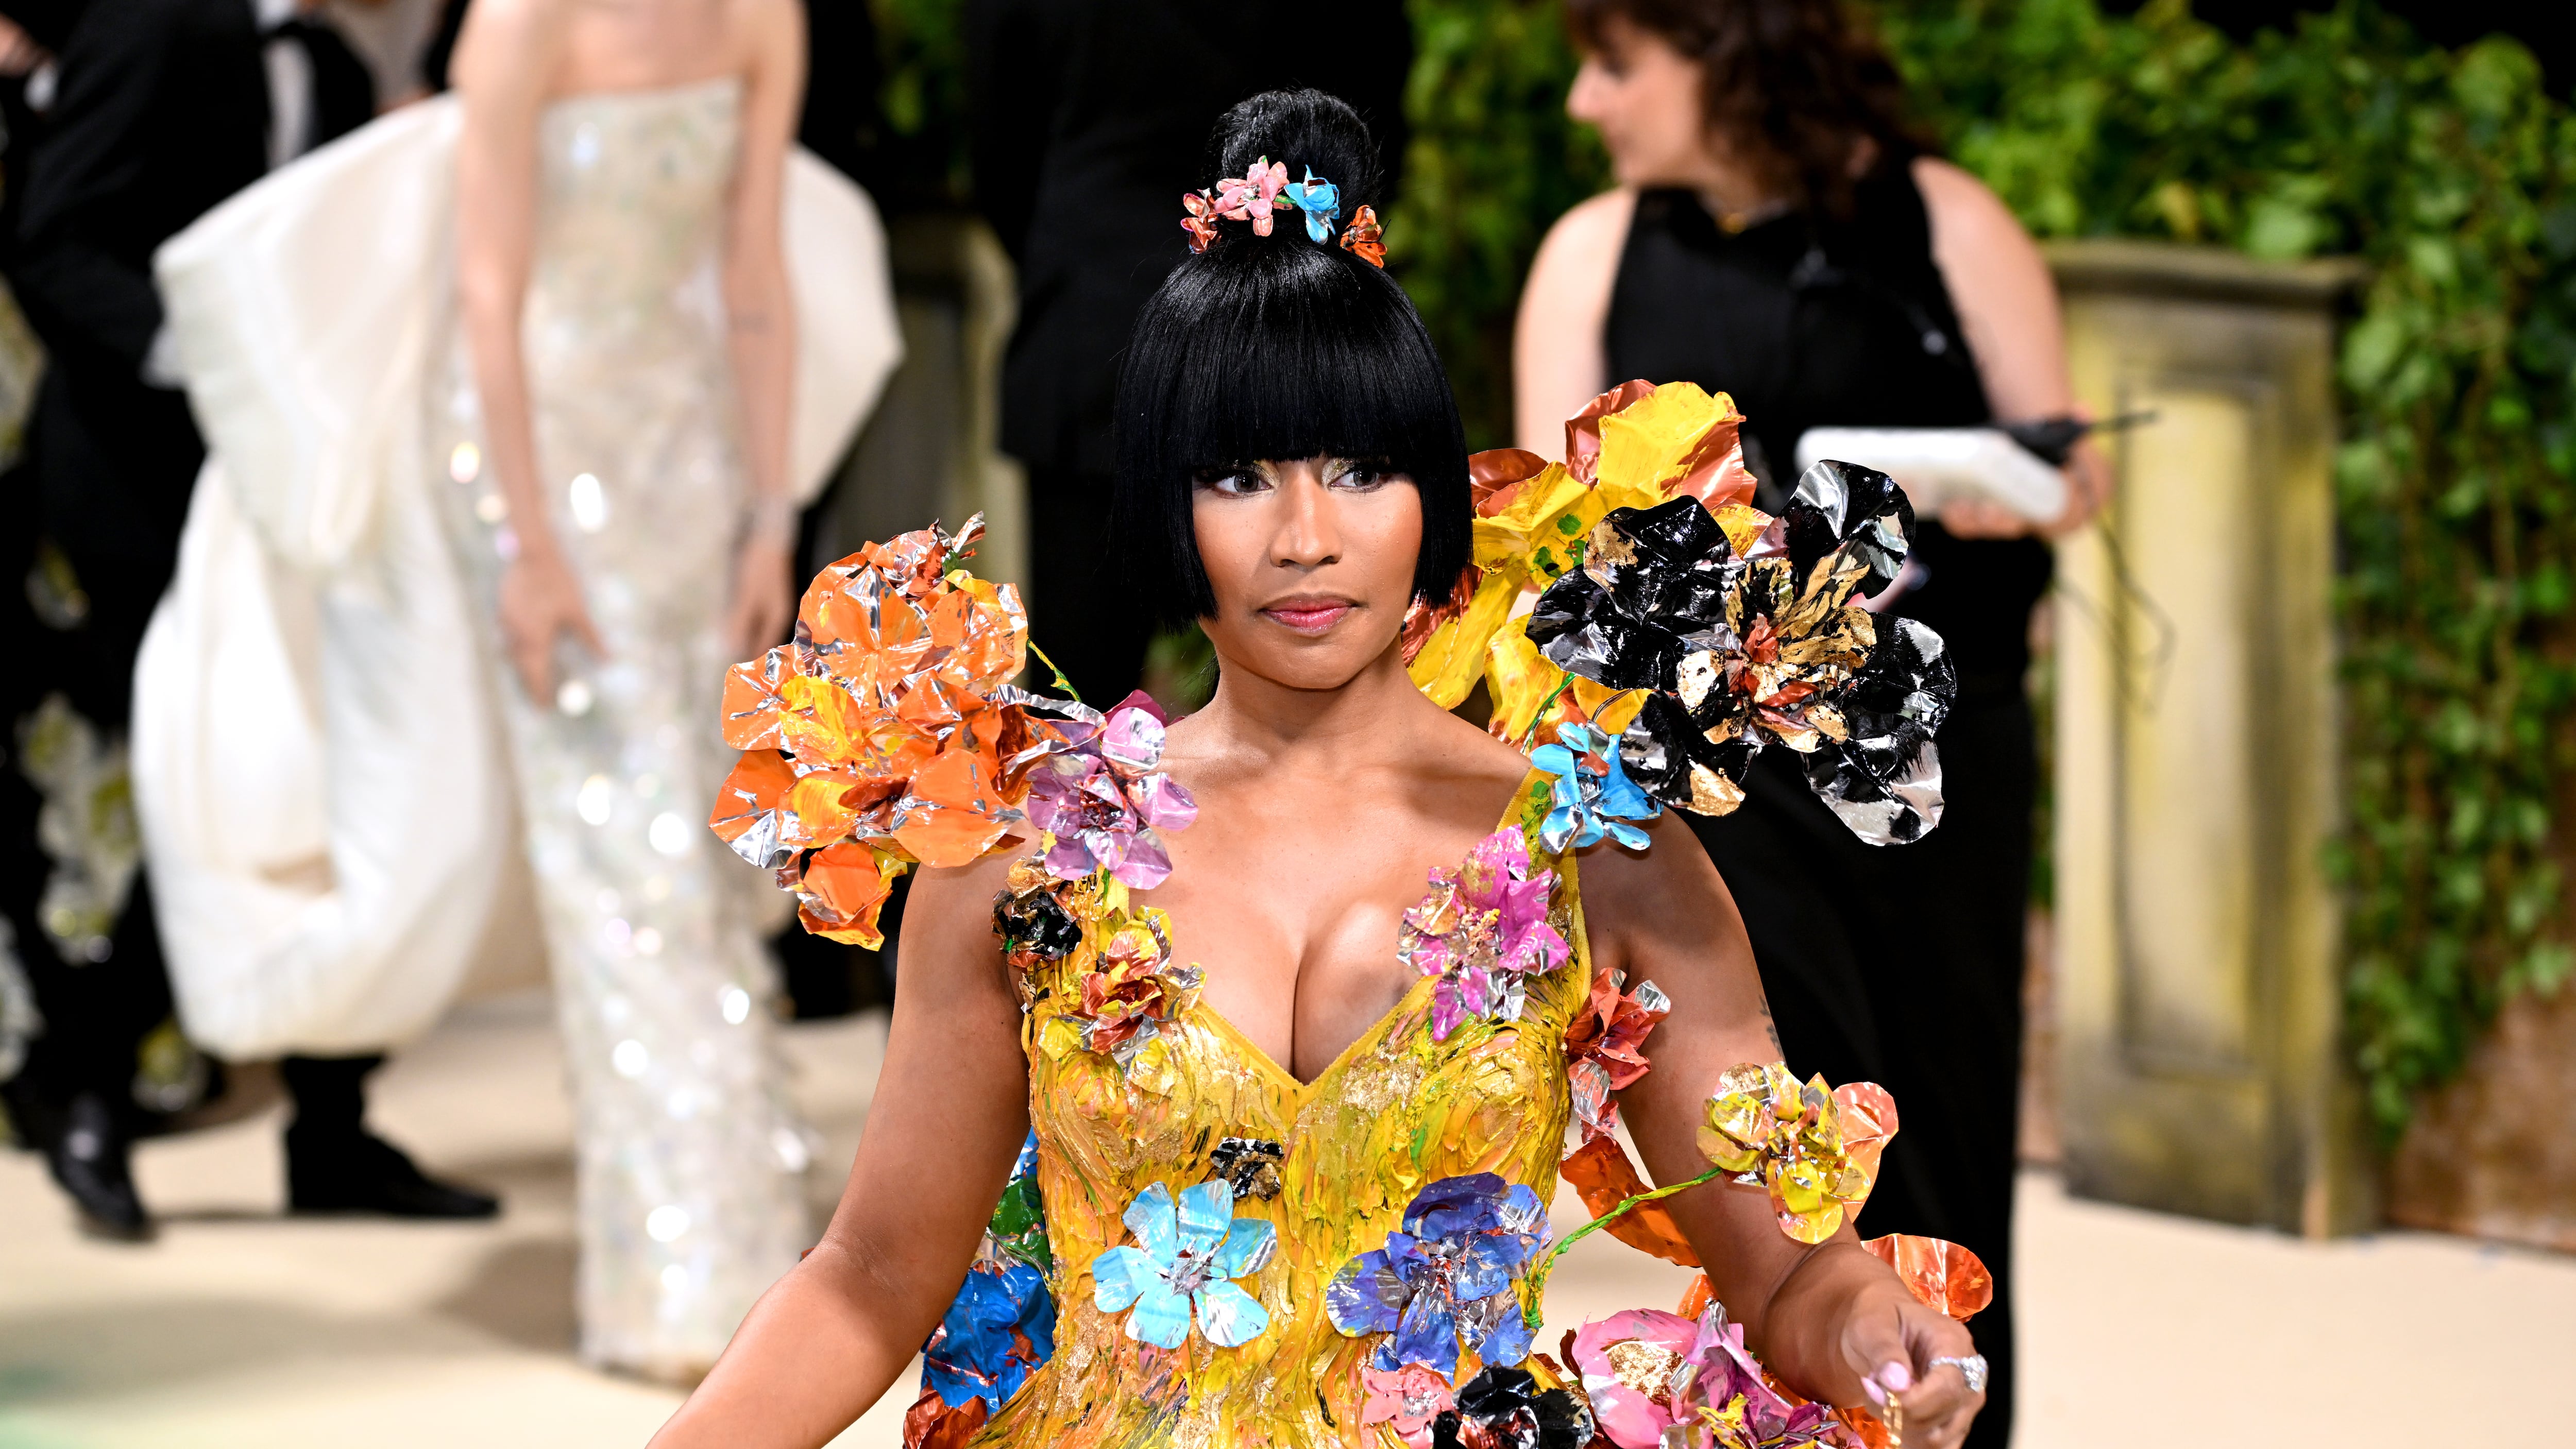 Singer Nicki Minaj at the Met Gala